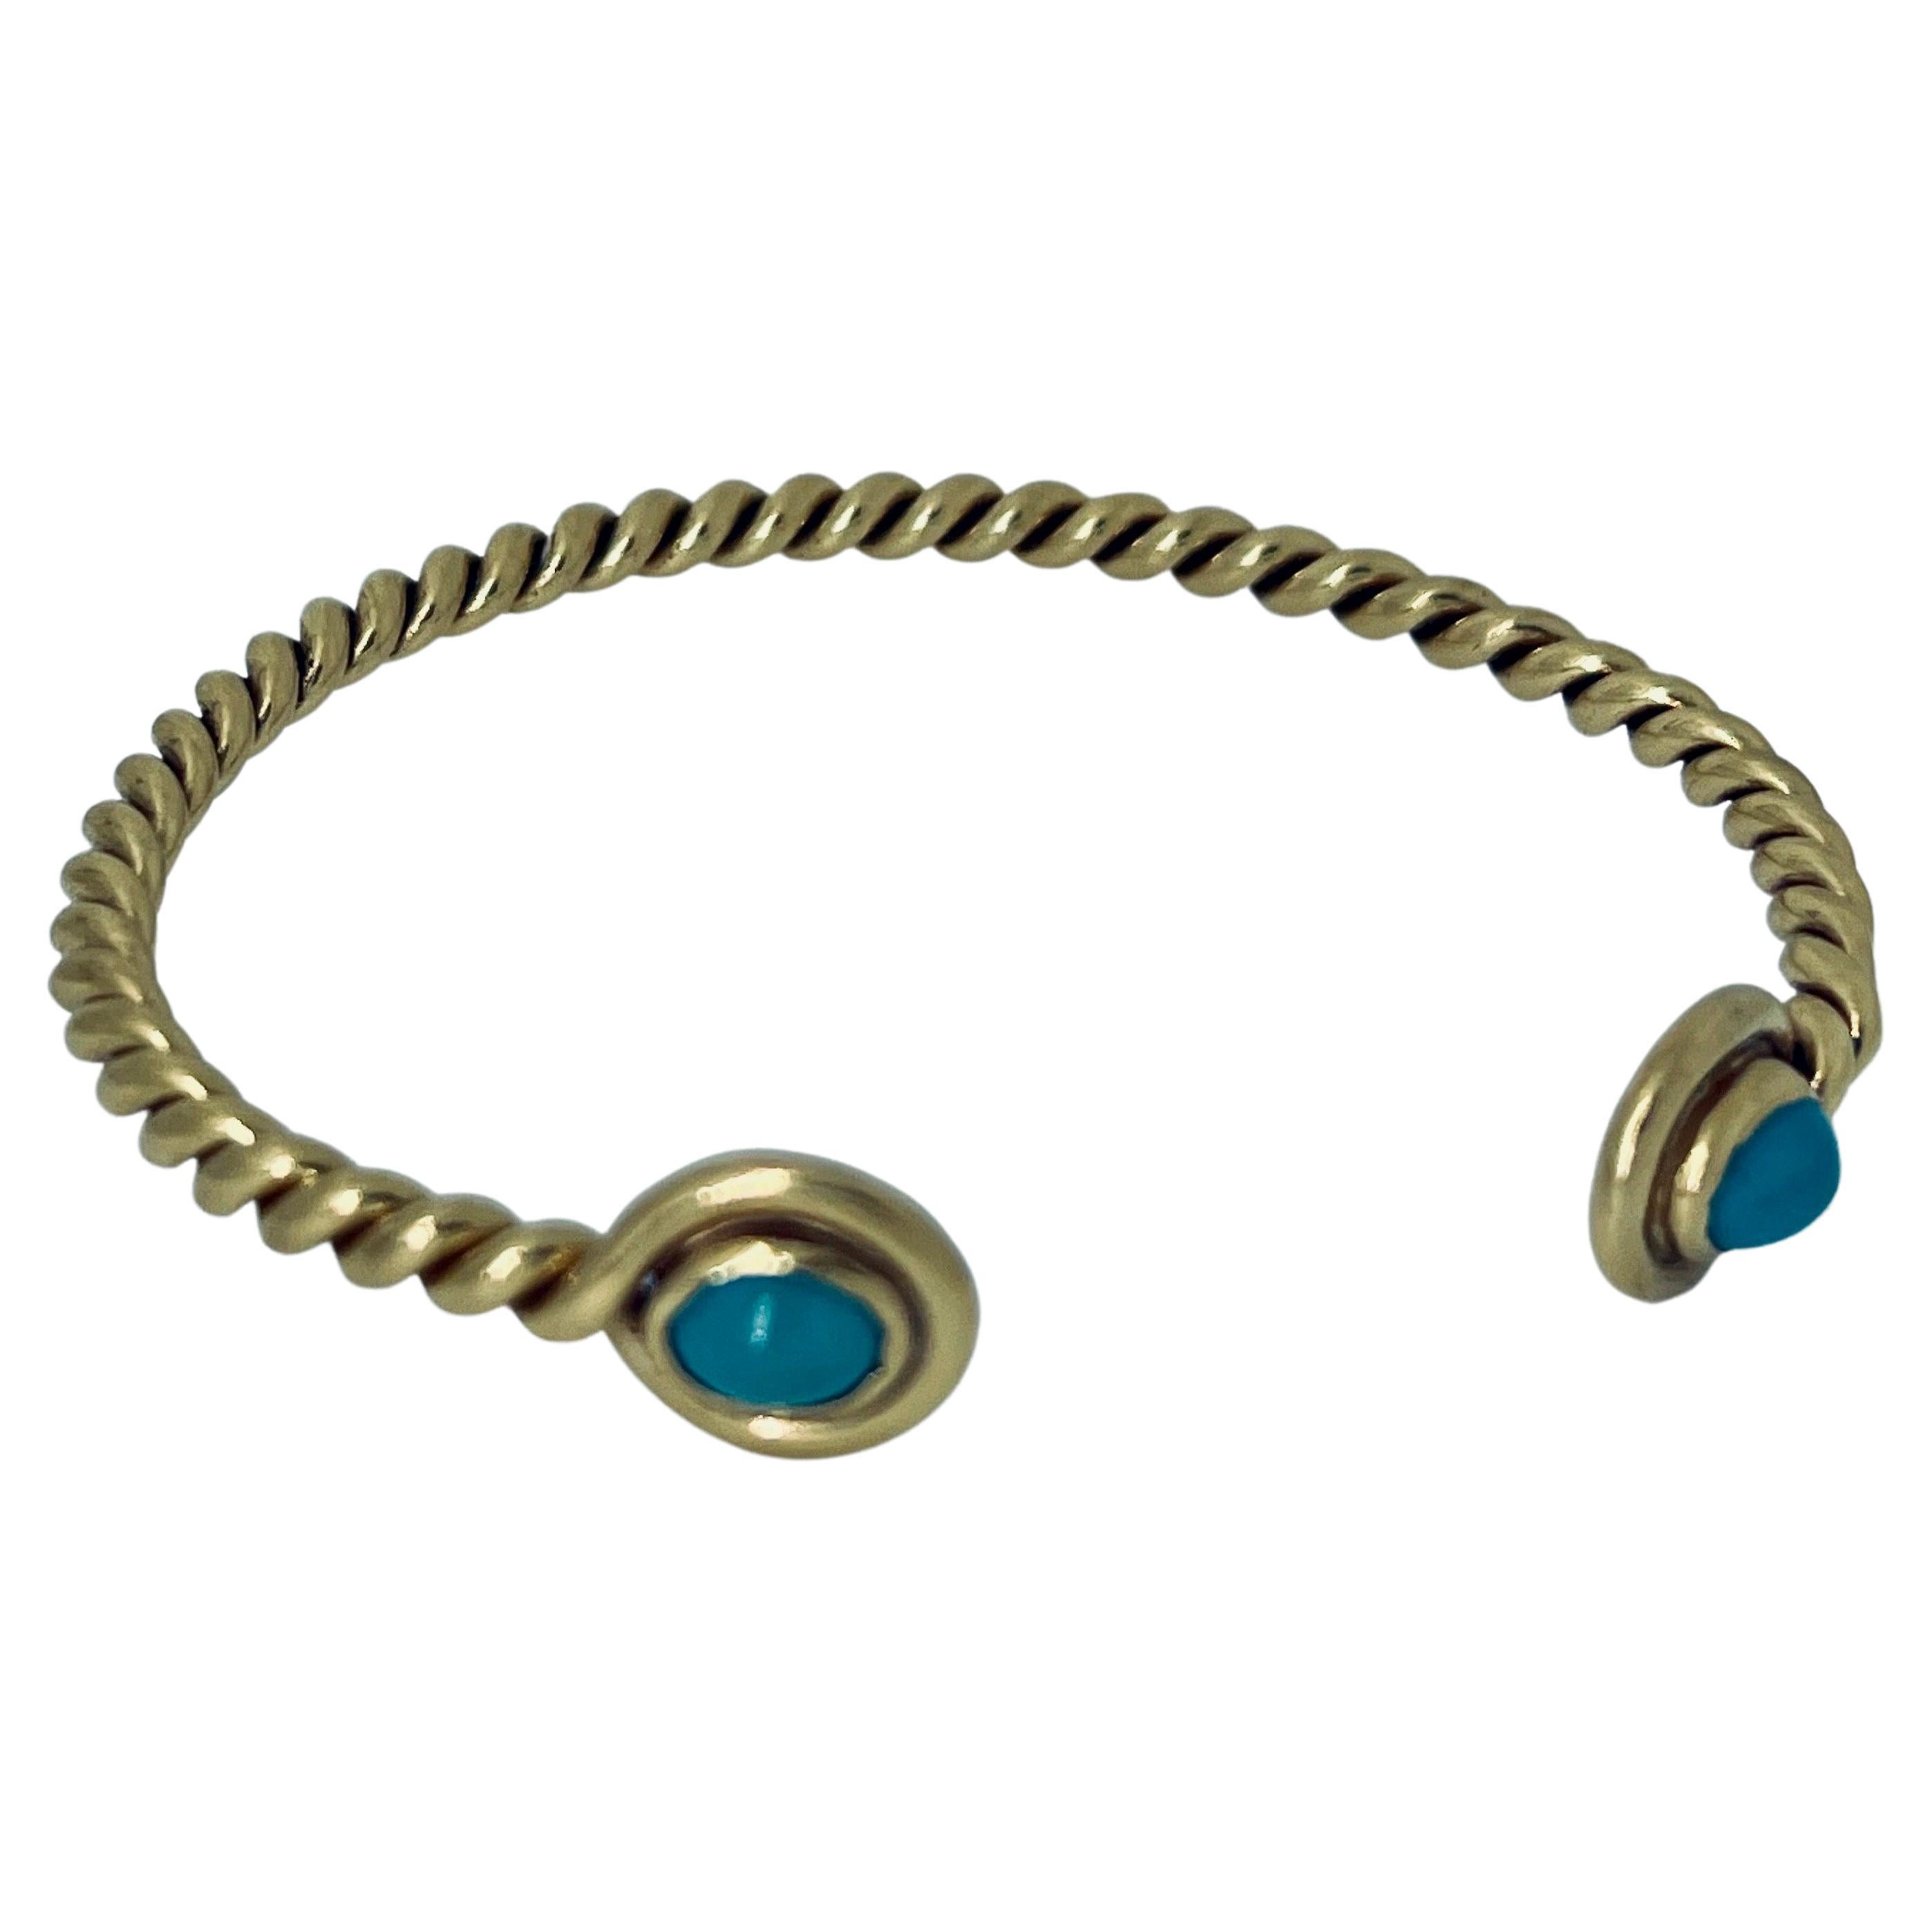 Bracelet jonc en or 18 carats et turquoise, 16 cm de circonférence, vers 1970